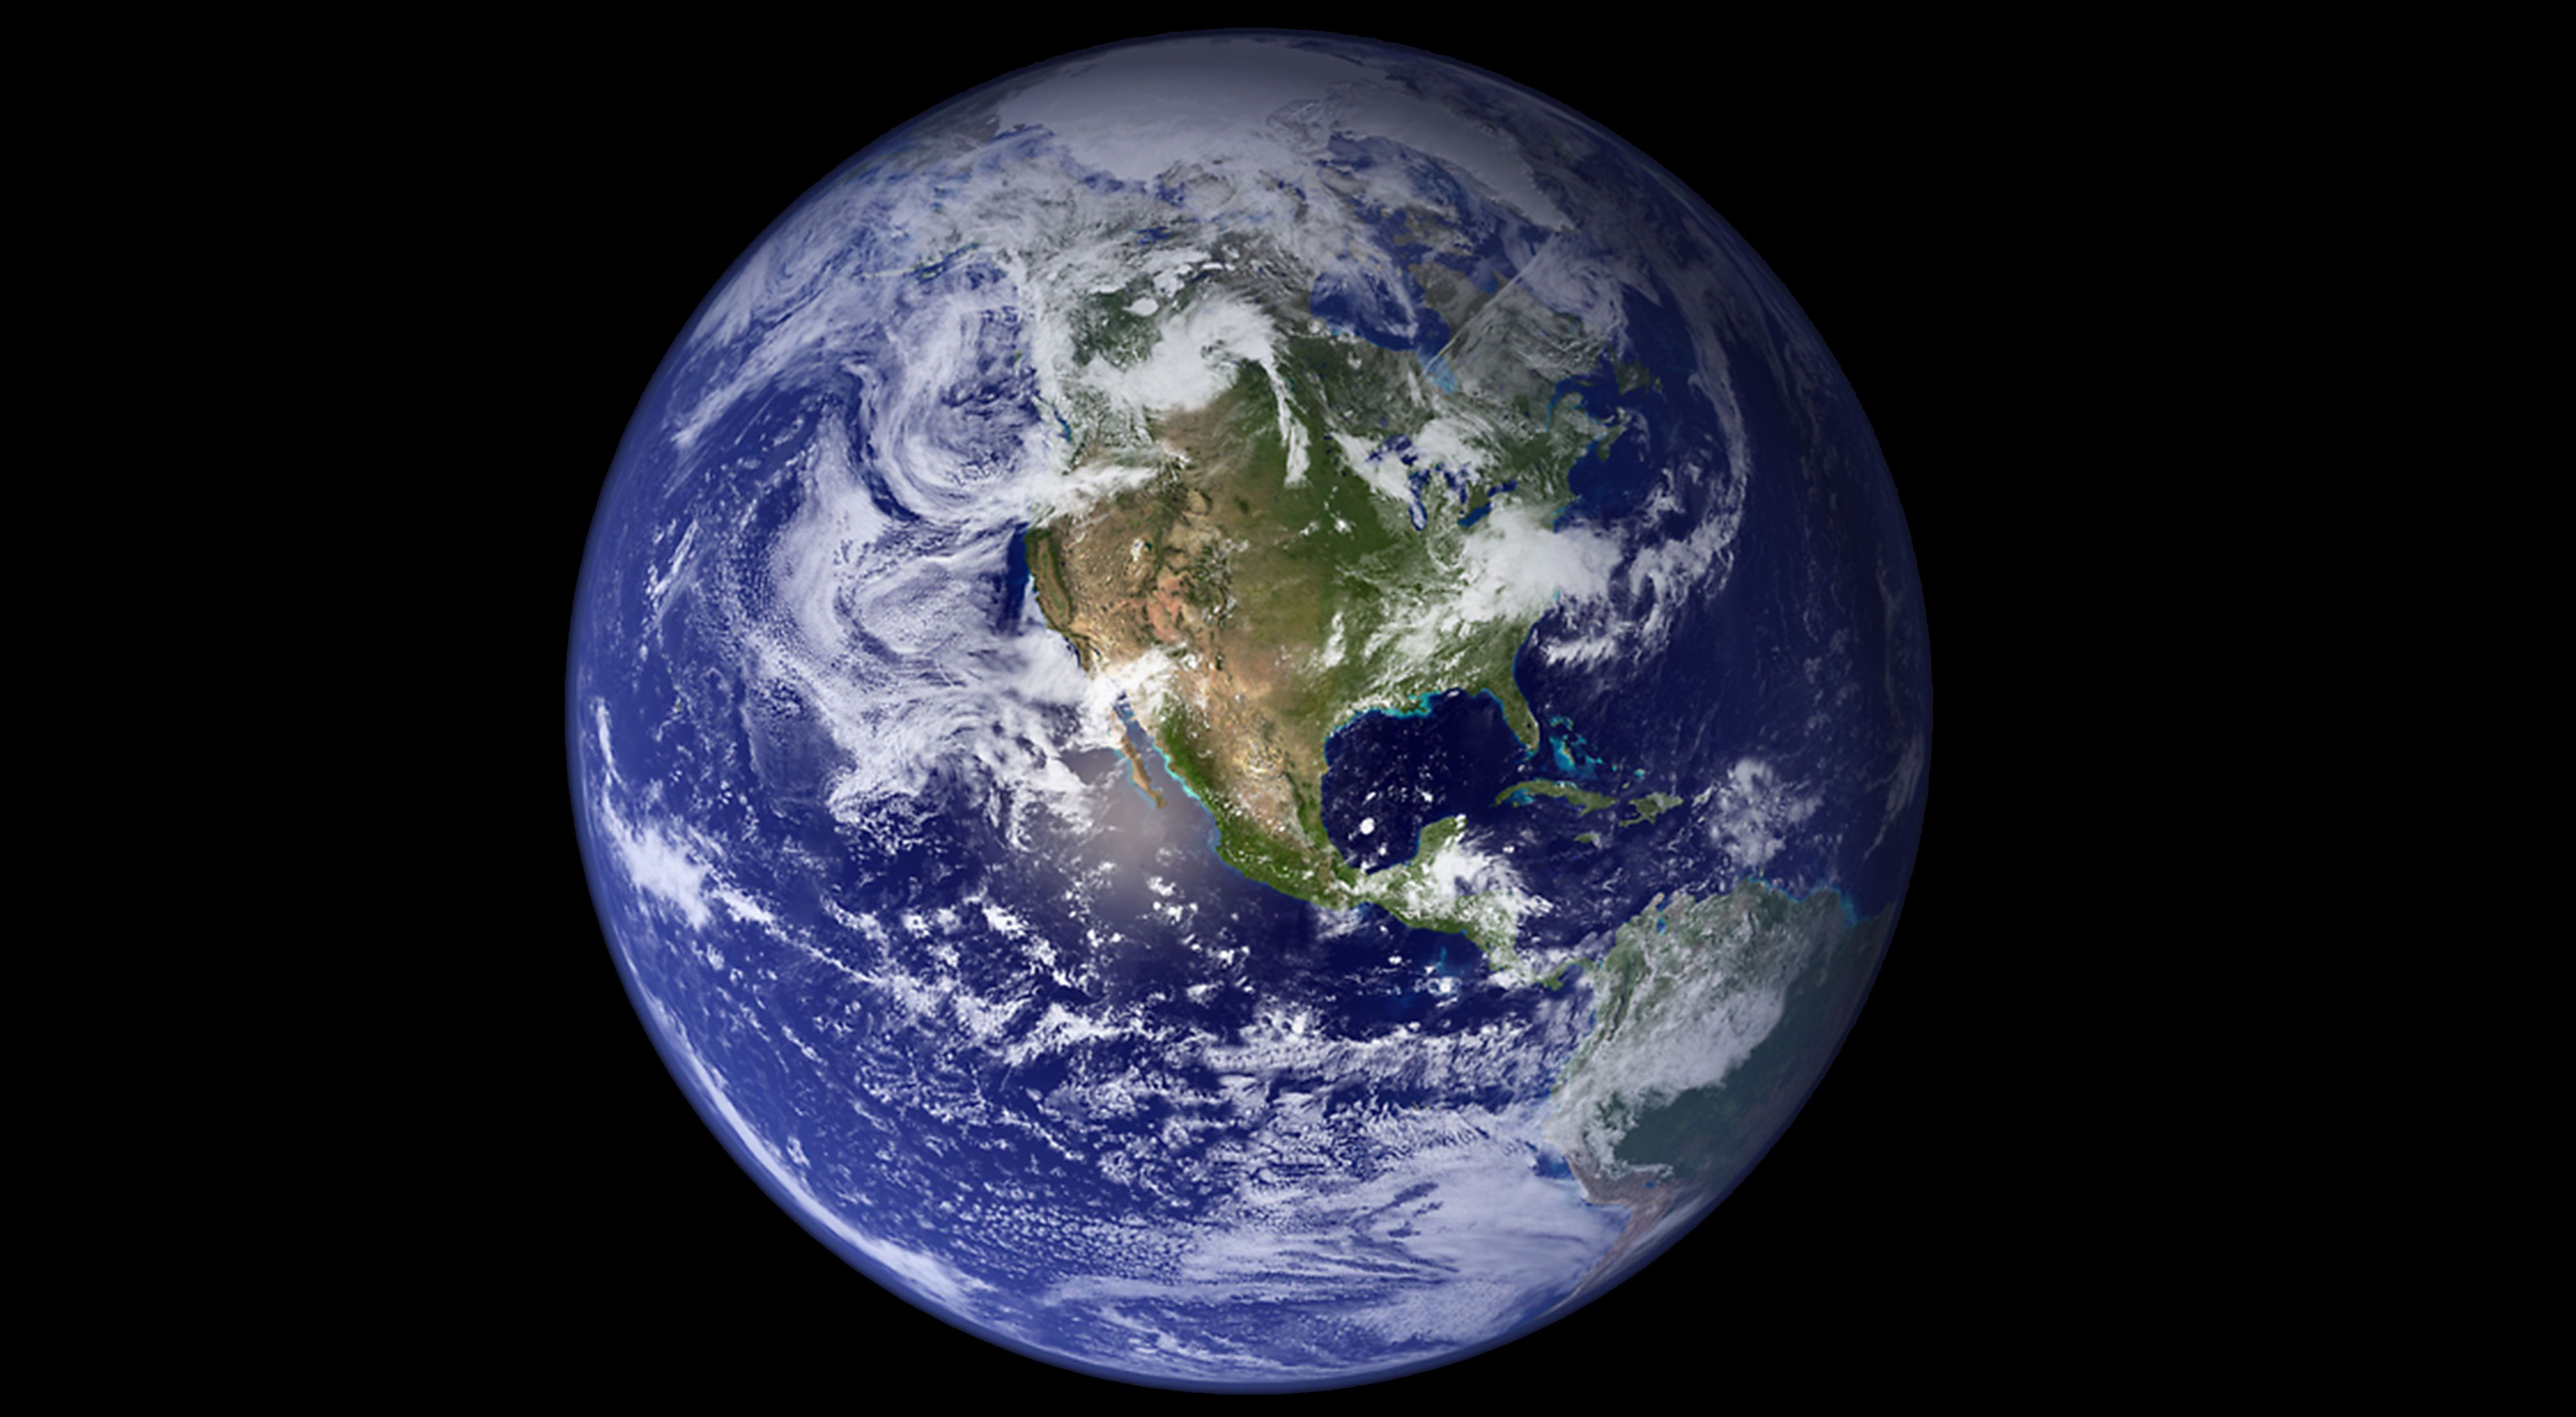 Foto de la Tierra tomada desde el espacio.